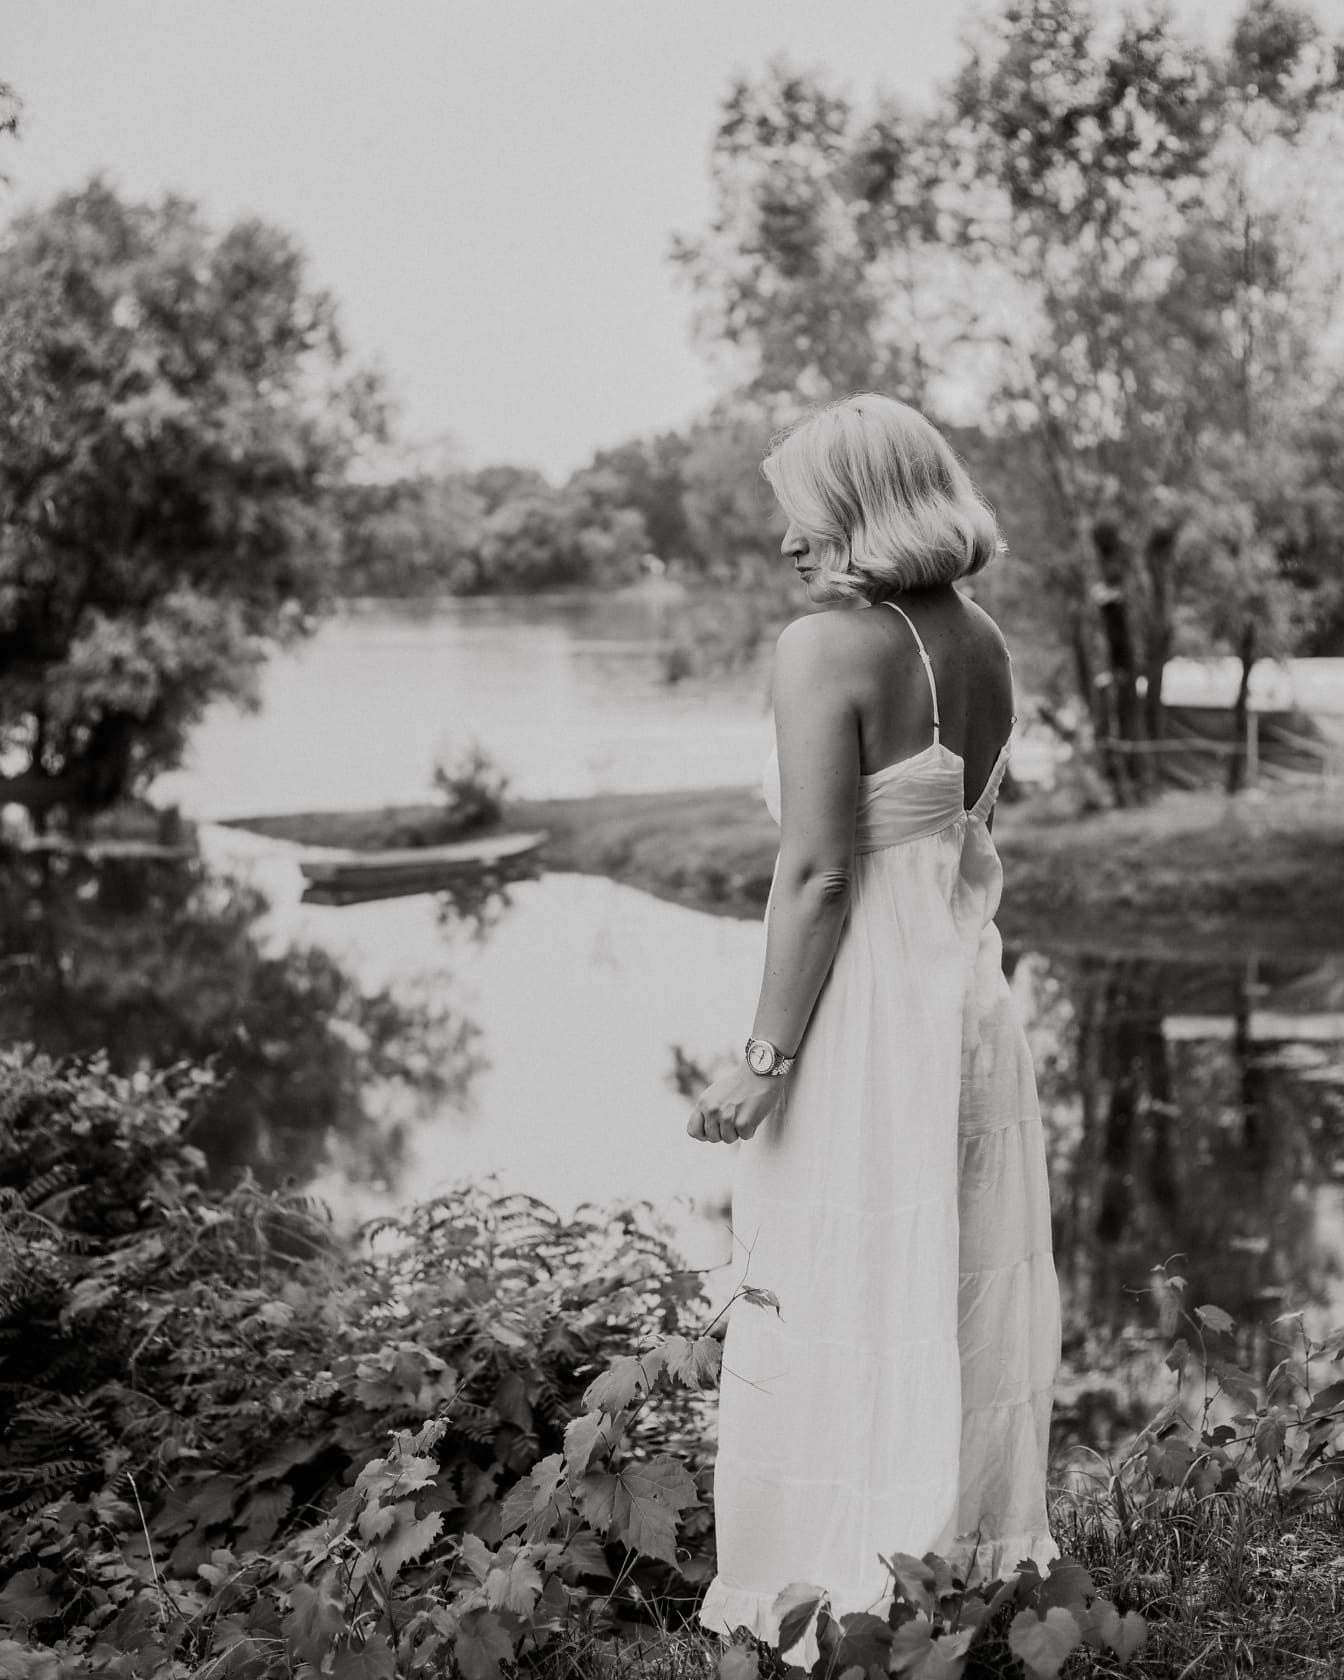 Femme en robe blanche fantaisie posant sur le monochrome au bord du lac